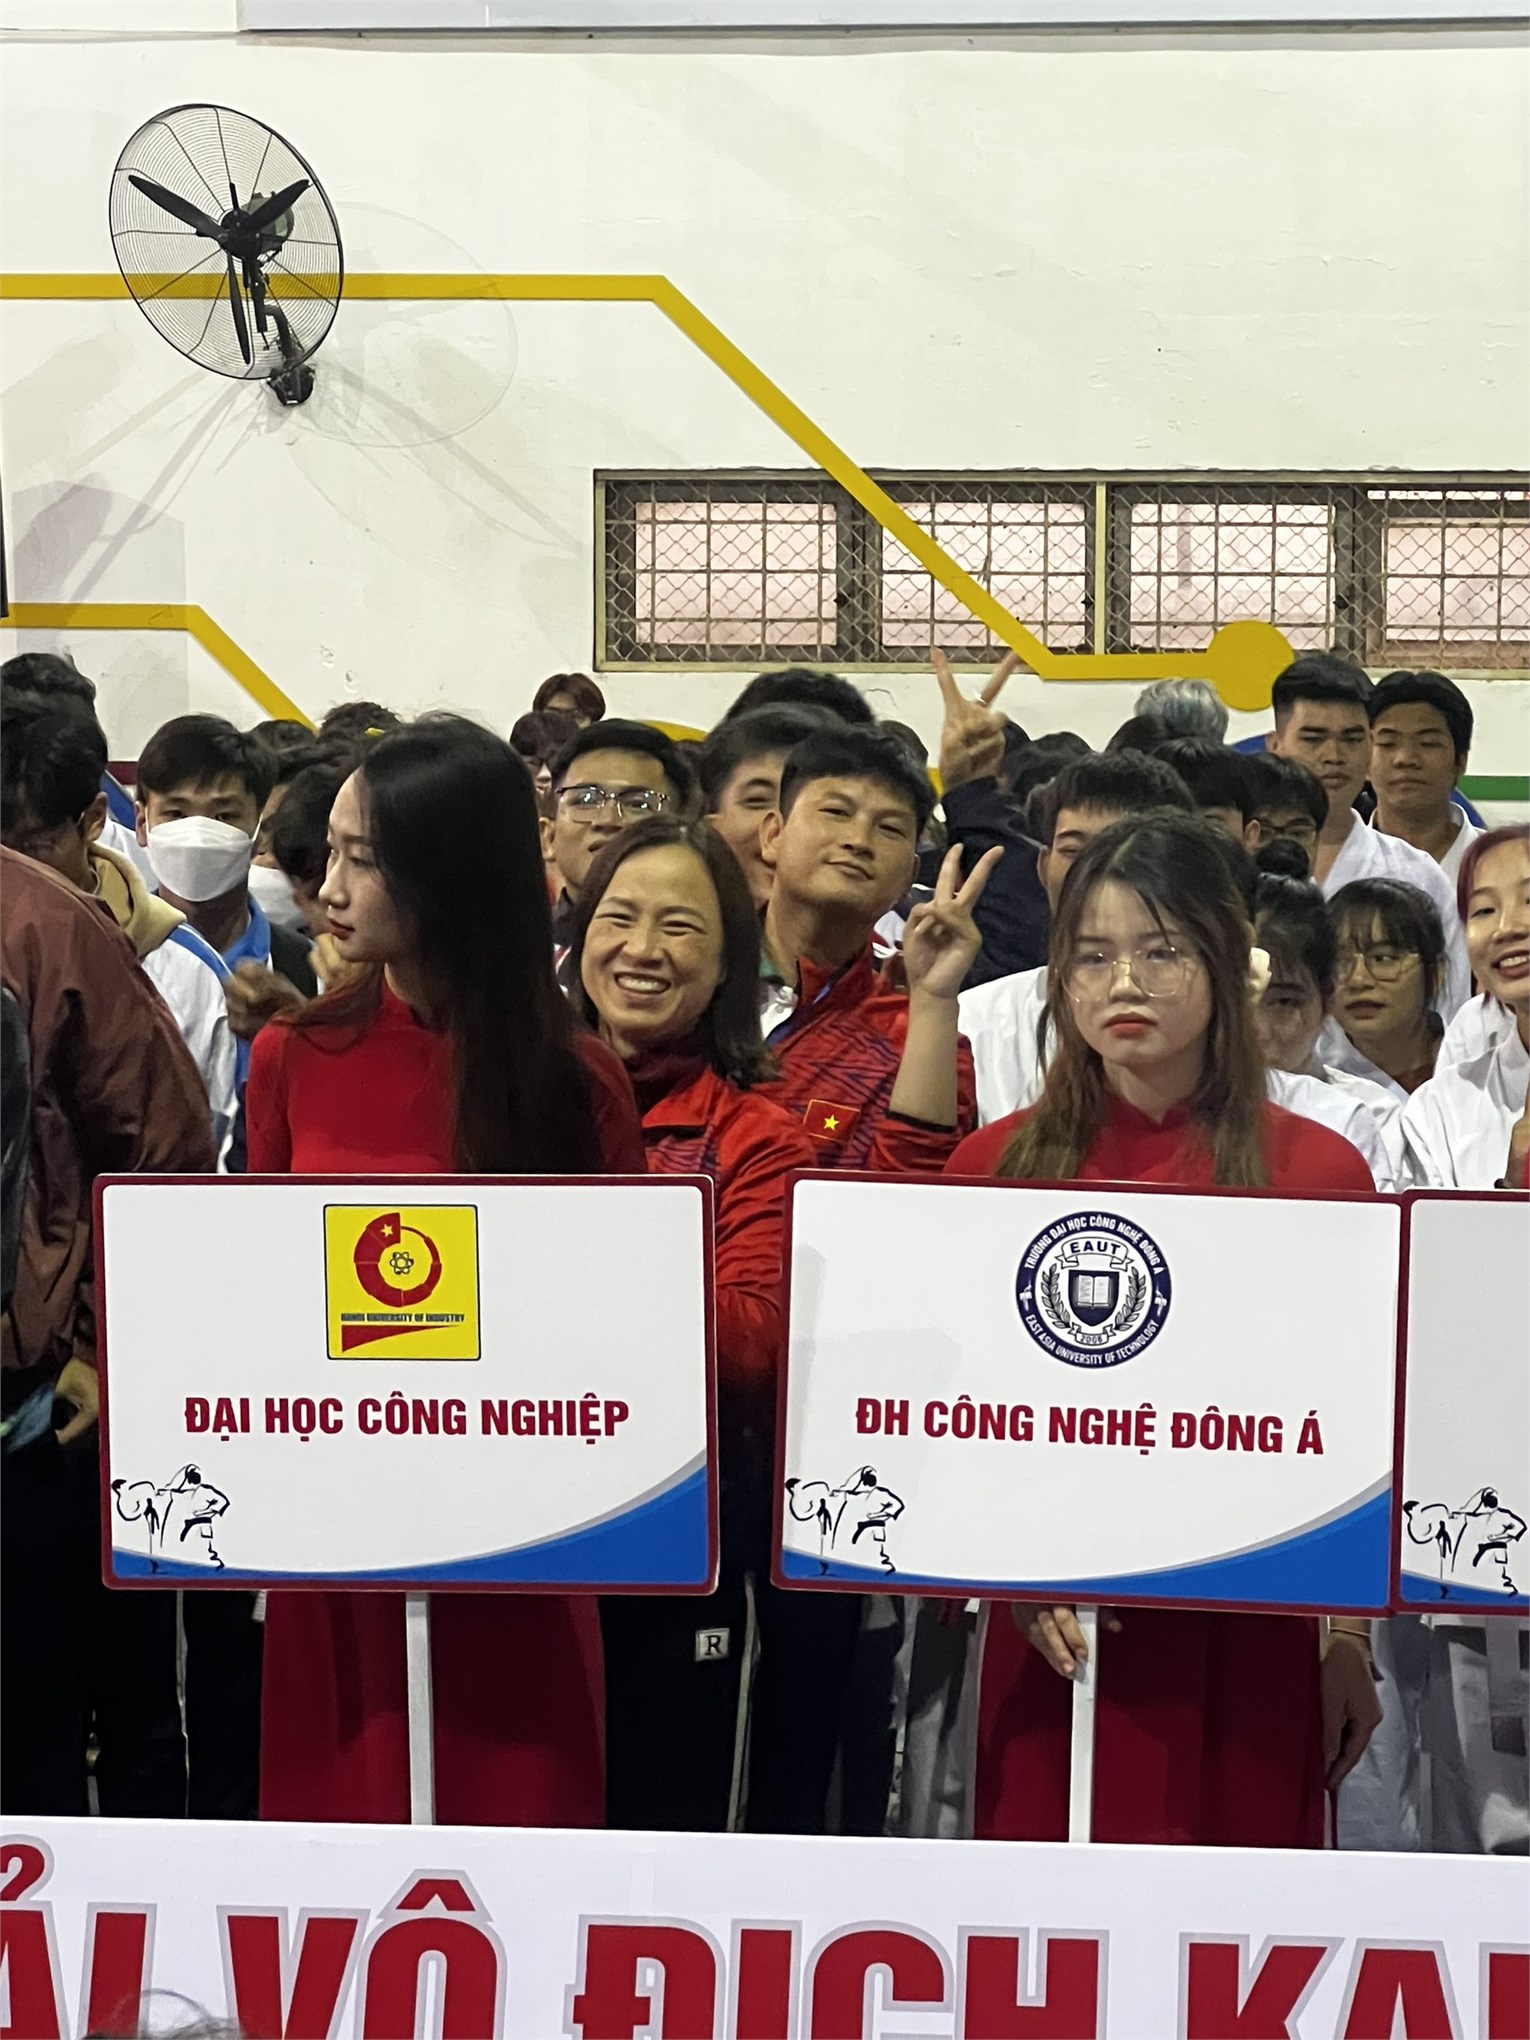 Đại học công nghiệp xuất sắc dành đạt giải nhì toàn đoàn giải vô địch Karate sinh viên đại học, cao đẳng khu vực Hà Nội năm 2022